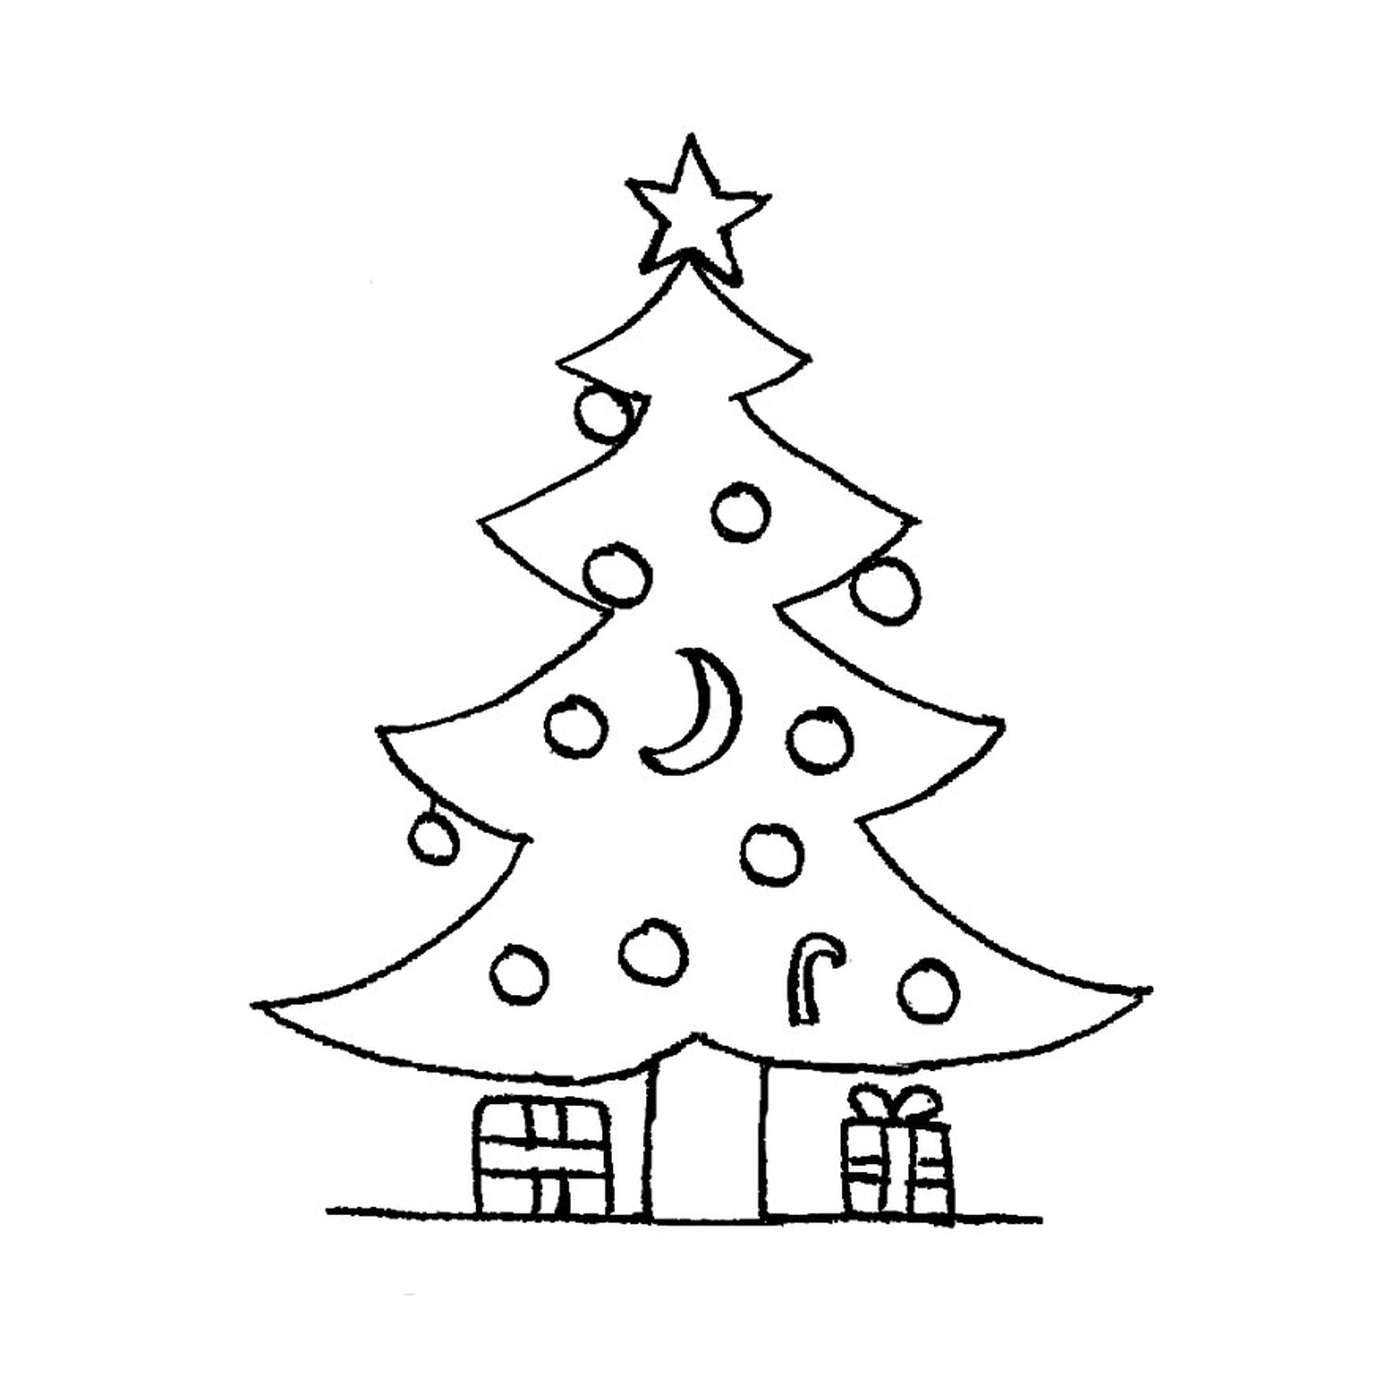  एक क्रिसमस का पेड़ जिसमें तोहफे दिए जाते हैं 